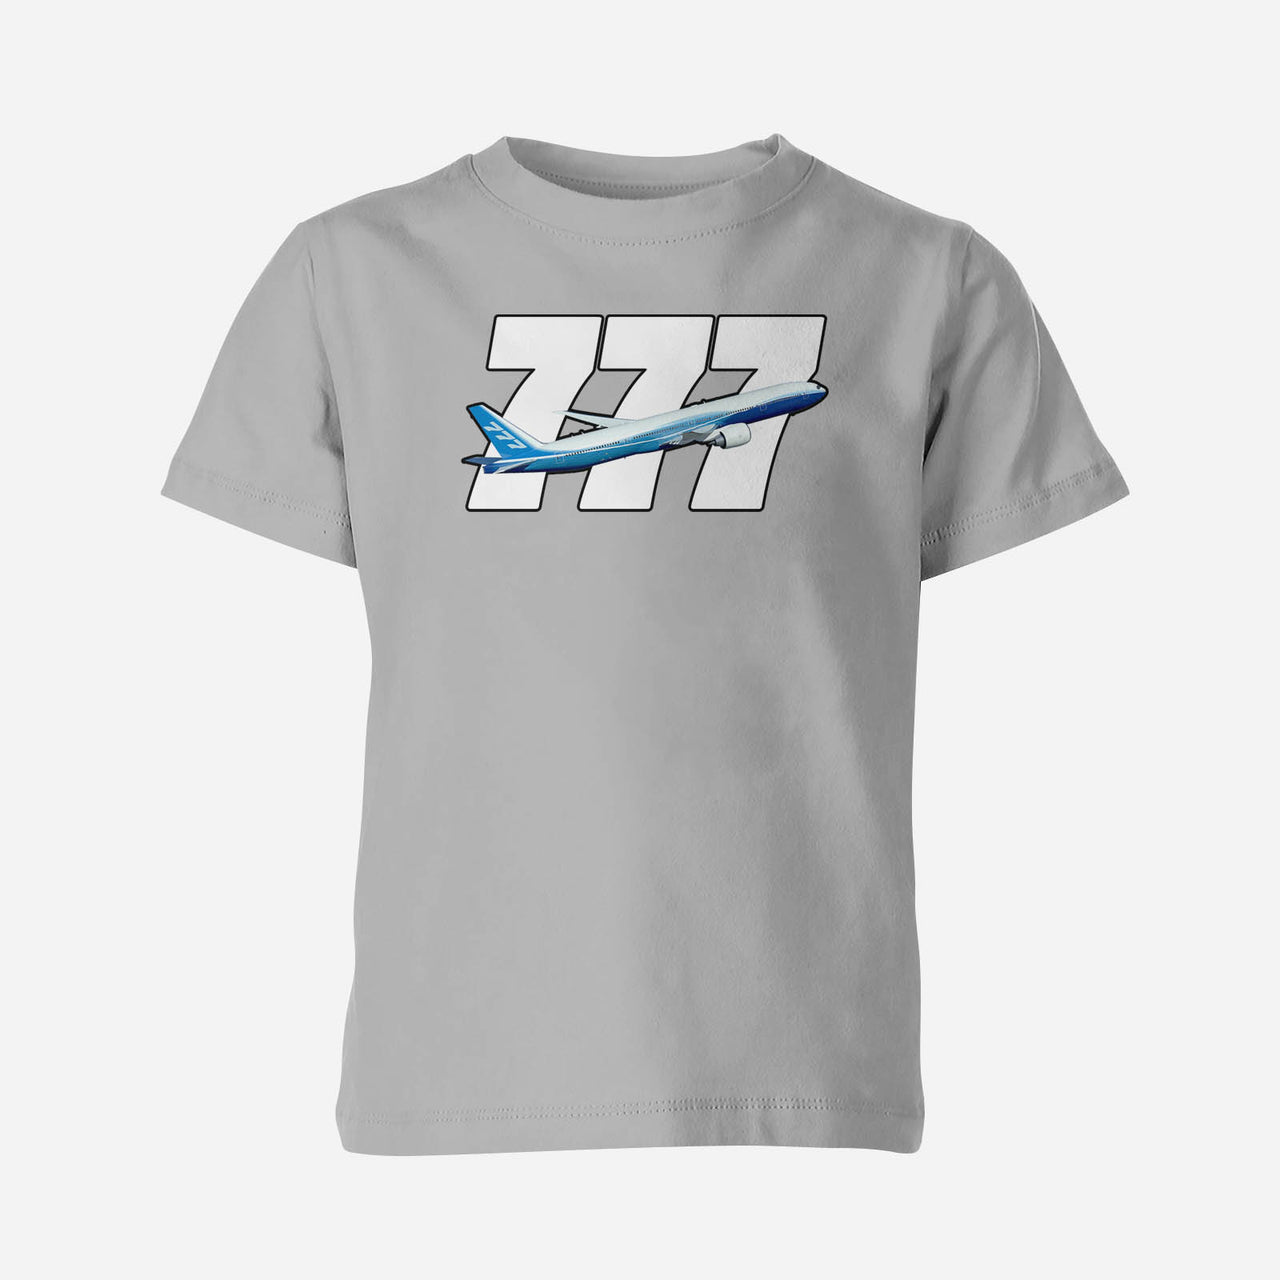 Super Boeing 777 Designed Children T-Shirts